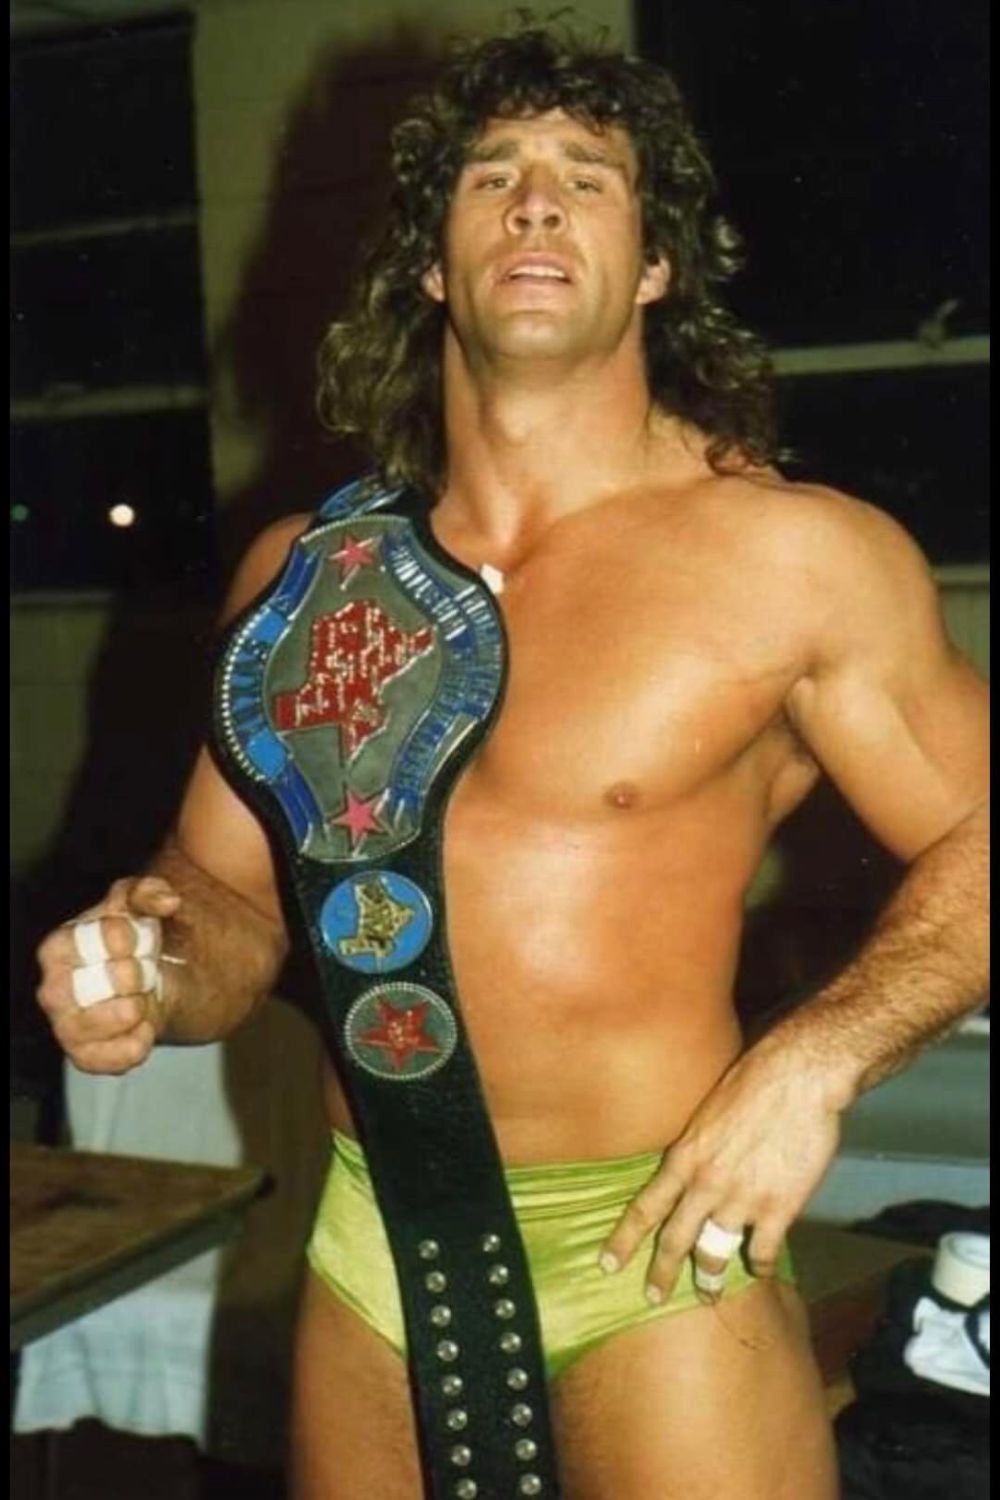 Kevin Von Erich Is A Former WCWA World Heavyweight Champion